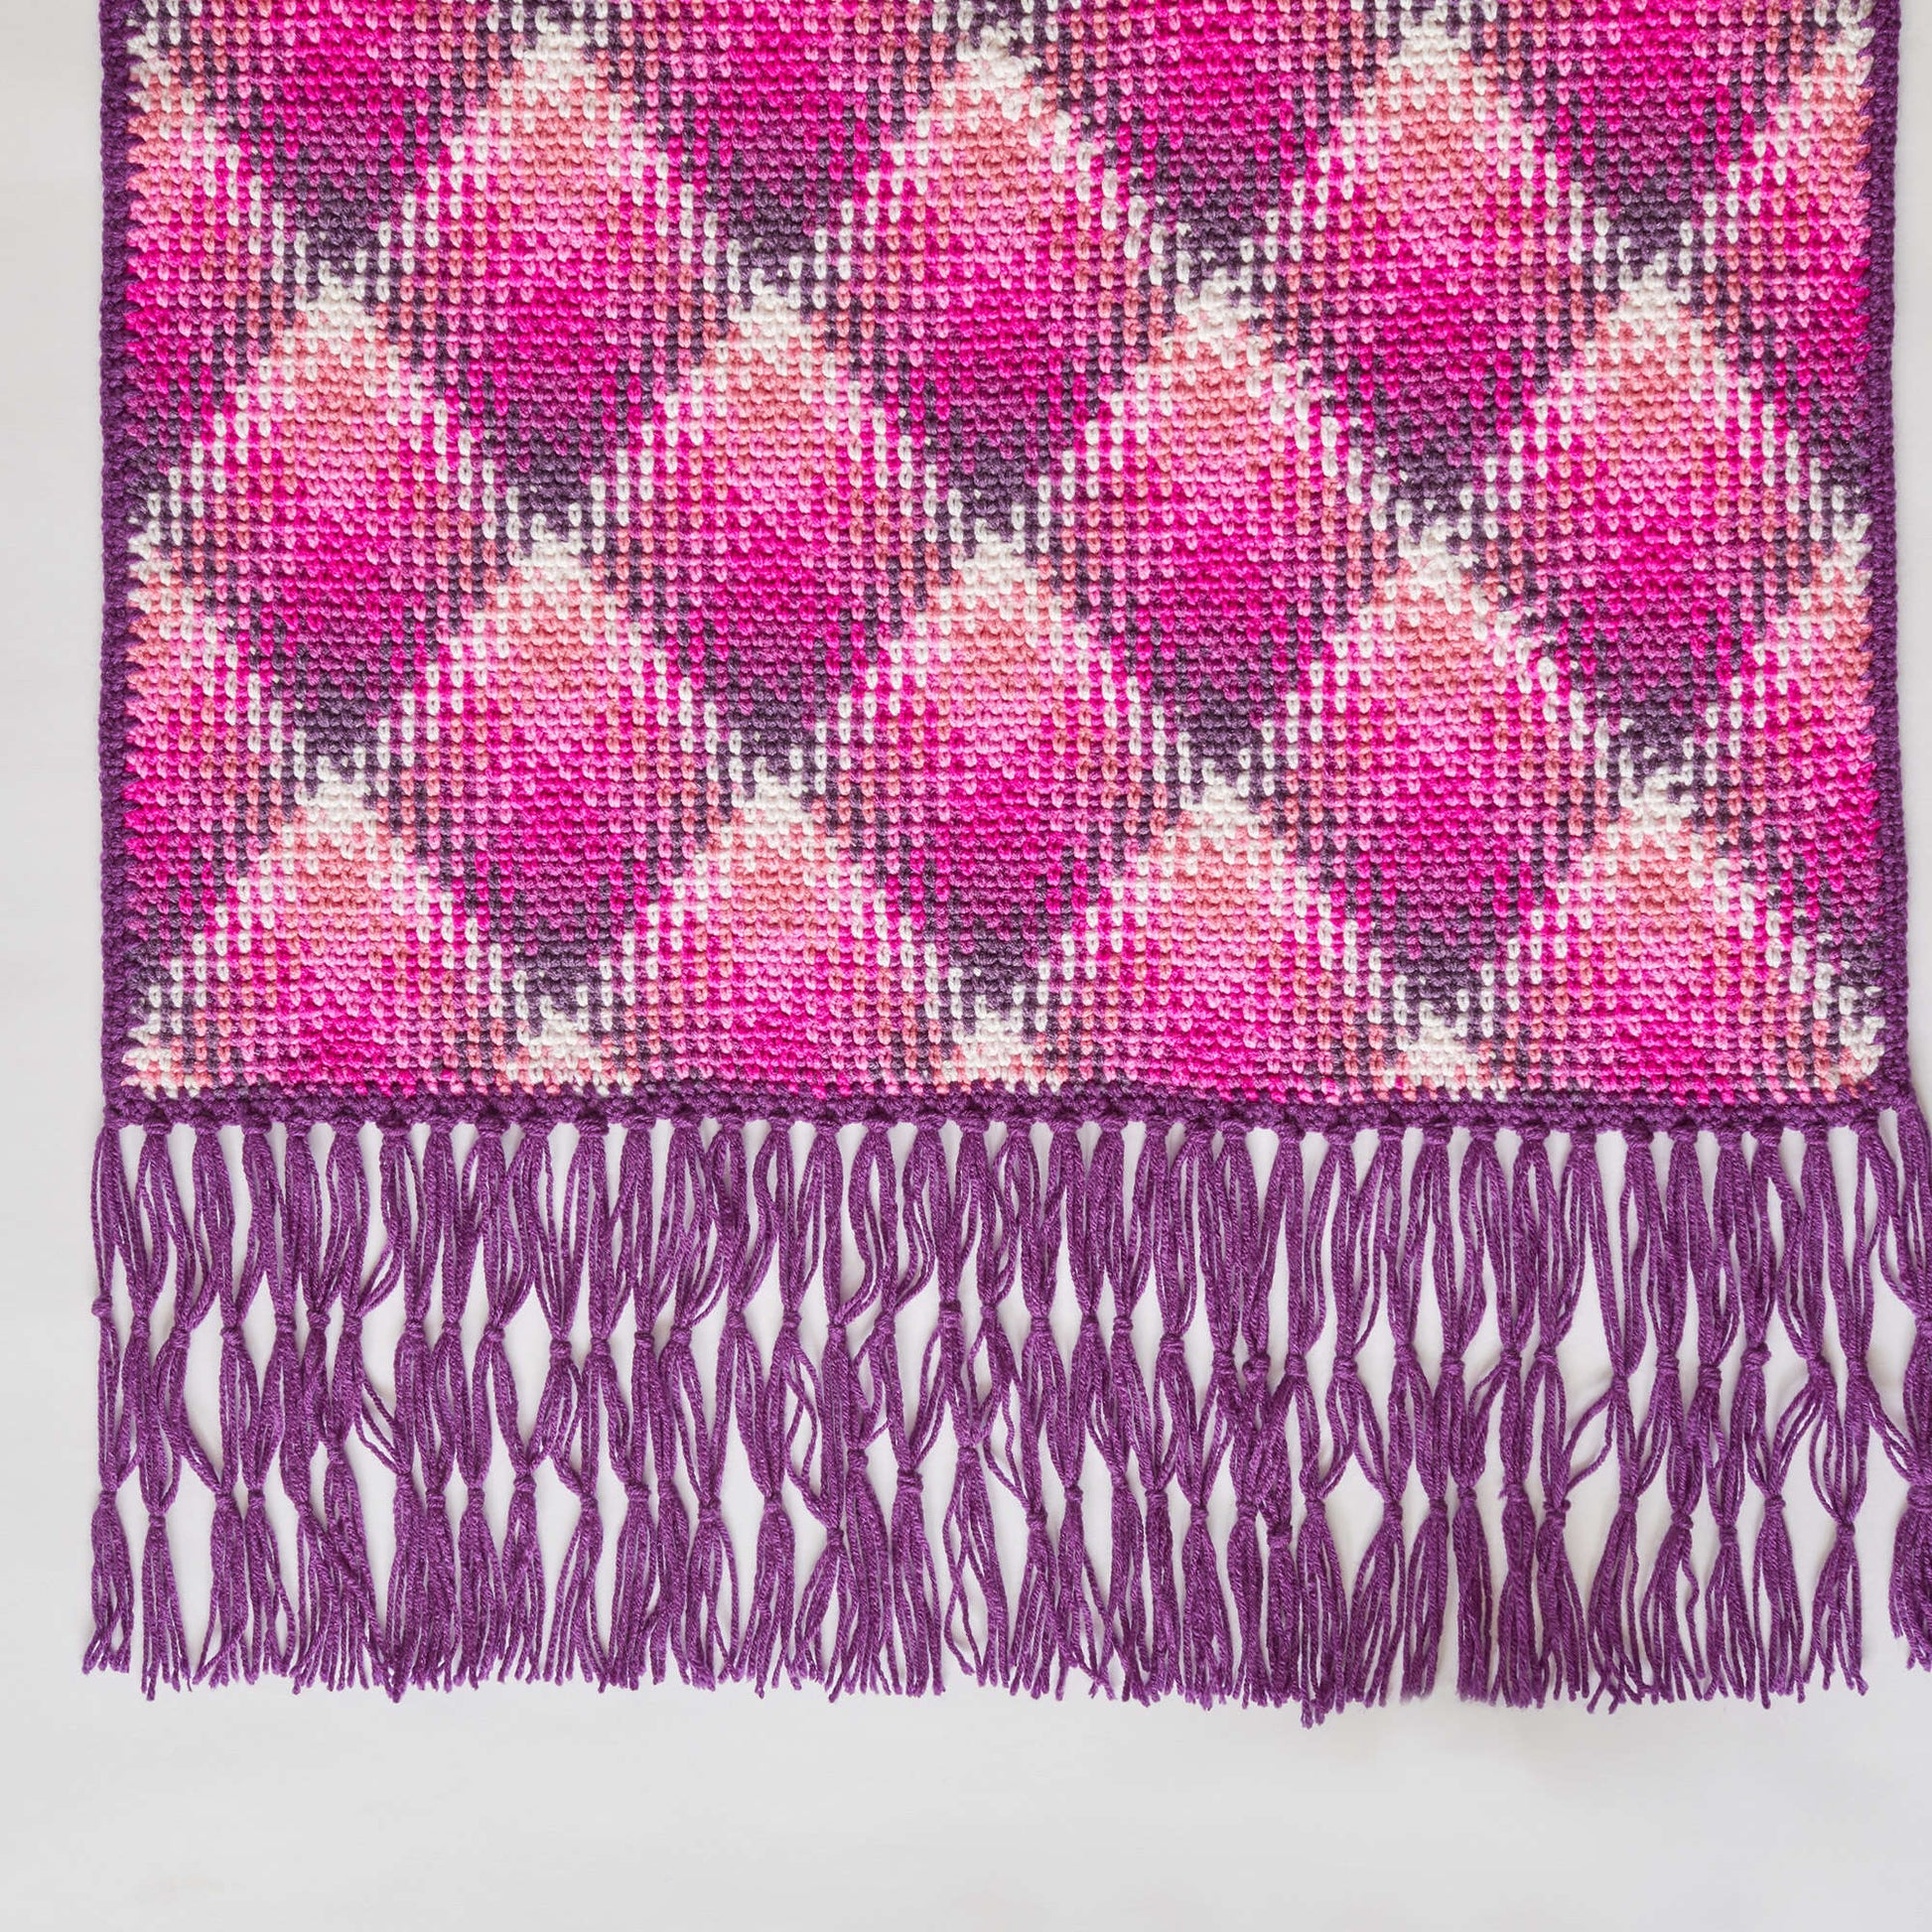 Free Red Heart Crochet Fabulous Planned Pooling Wrap Pattern